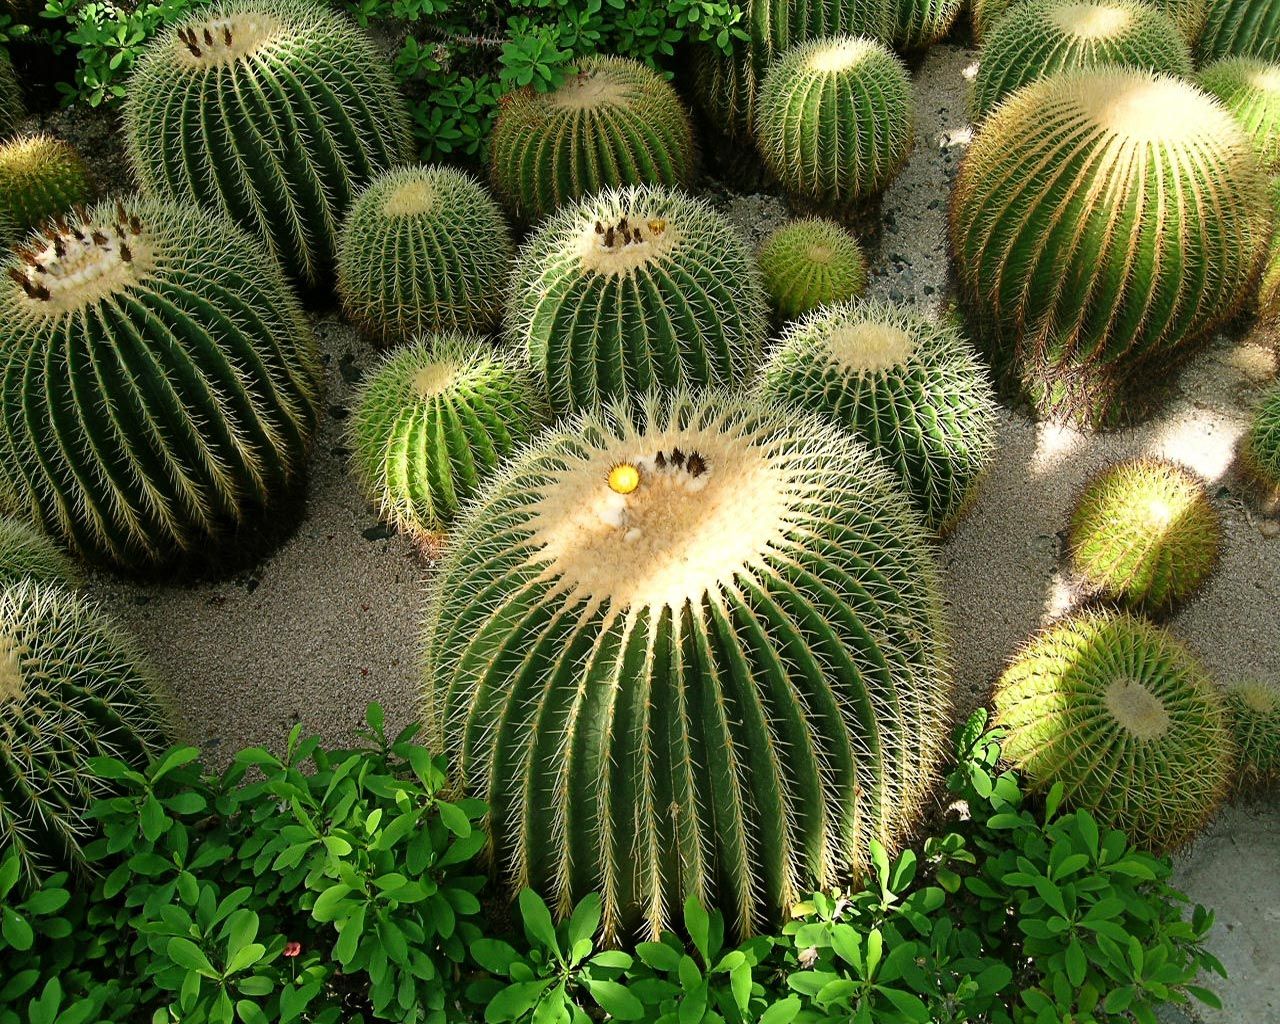 A group of barrel cactus plants in a garden - Cactus